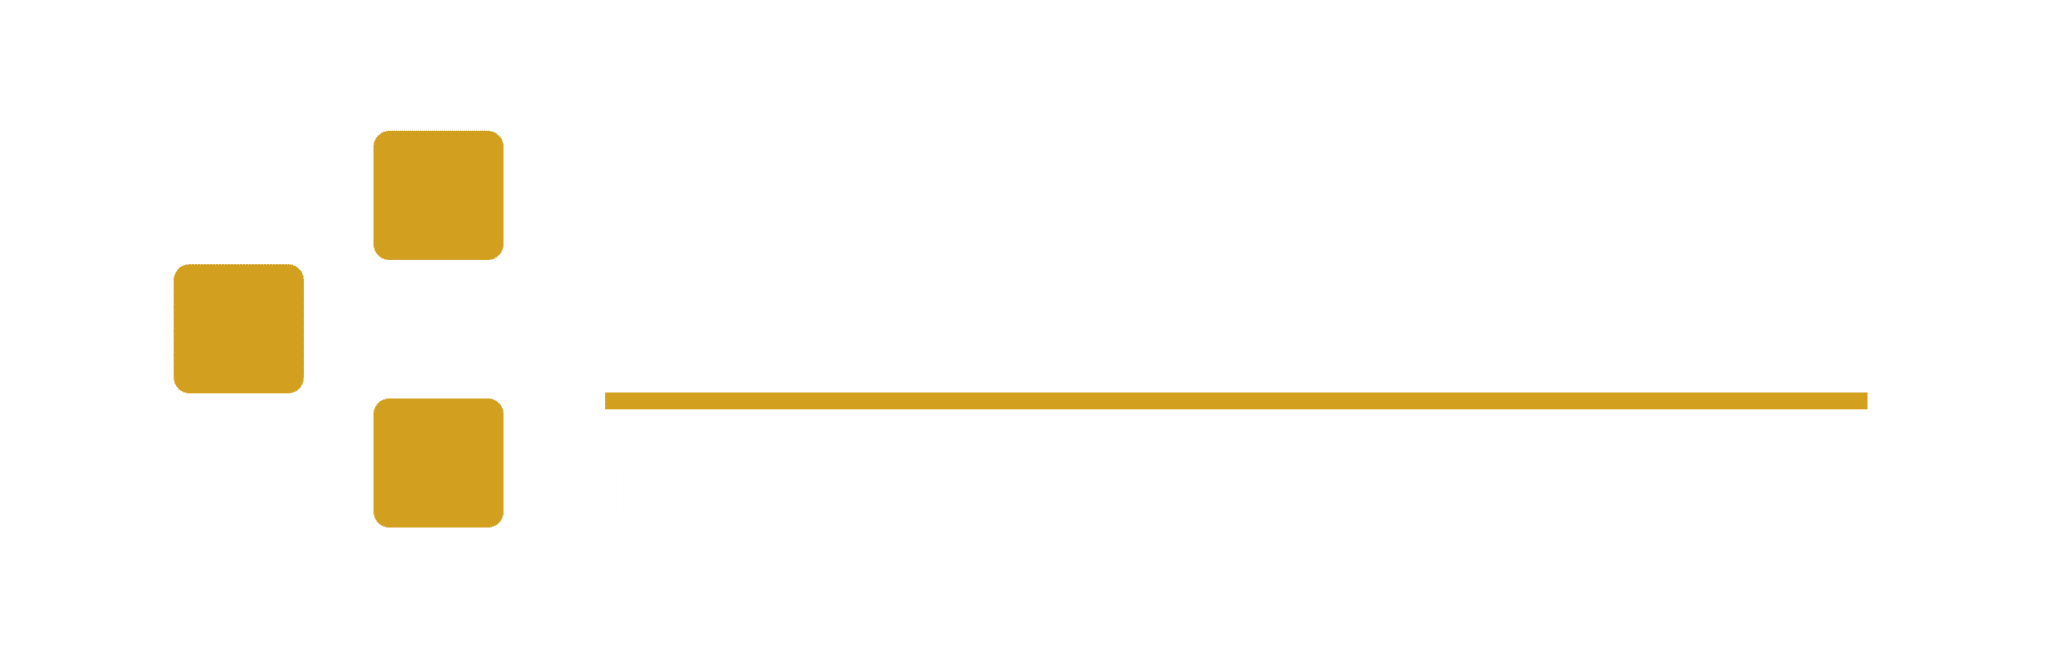 Team TREYSTA Logo